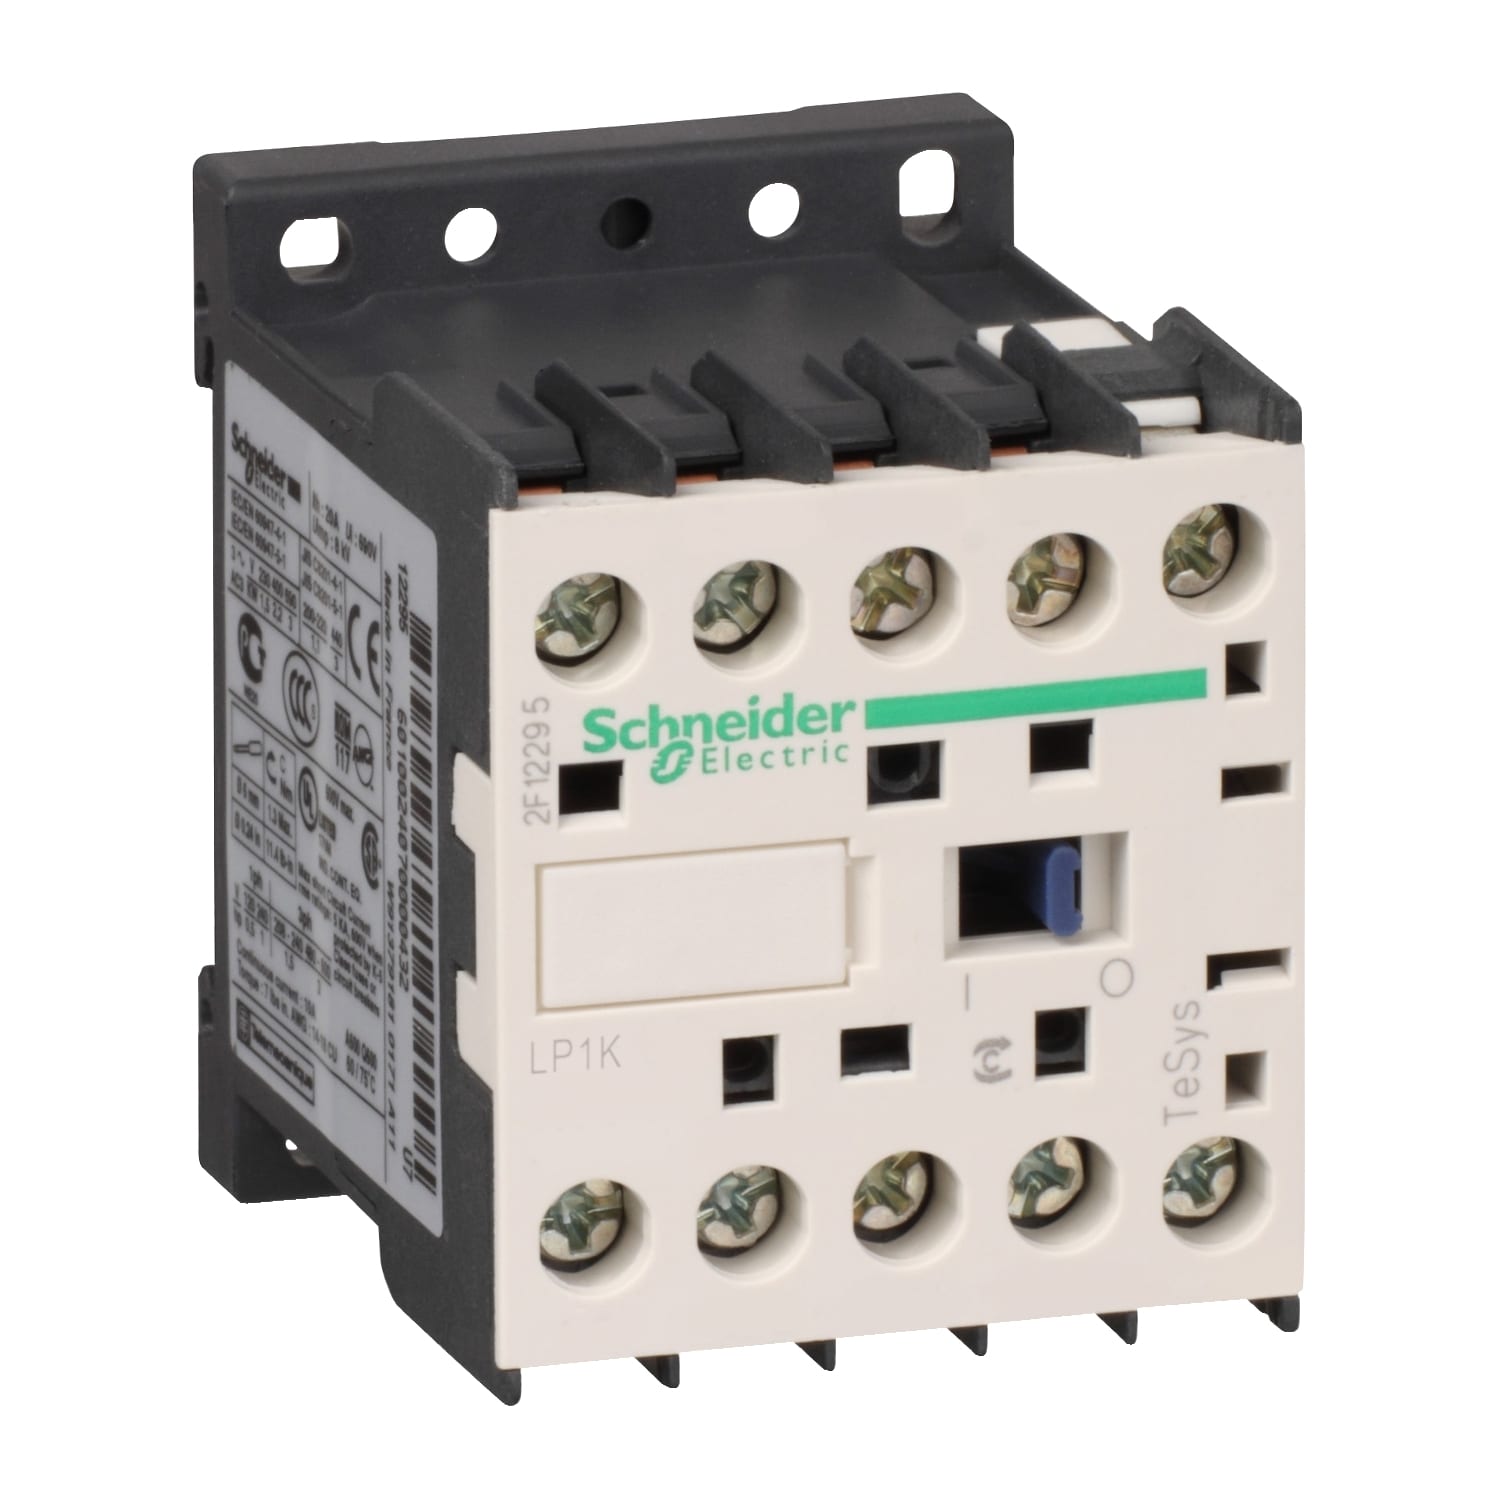 Schneider Electric - TeSys LP1K - contacteur - 3P - AC-3 440V - 12A - bobine 110Vcc